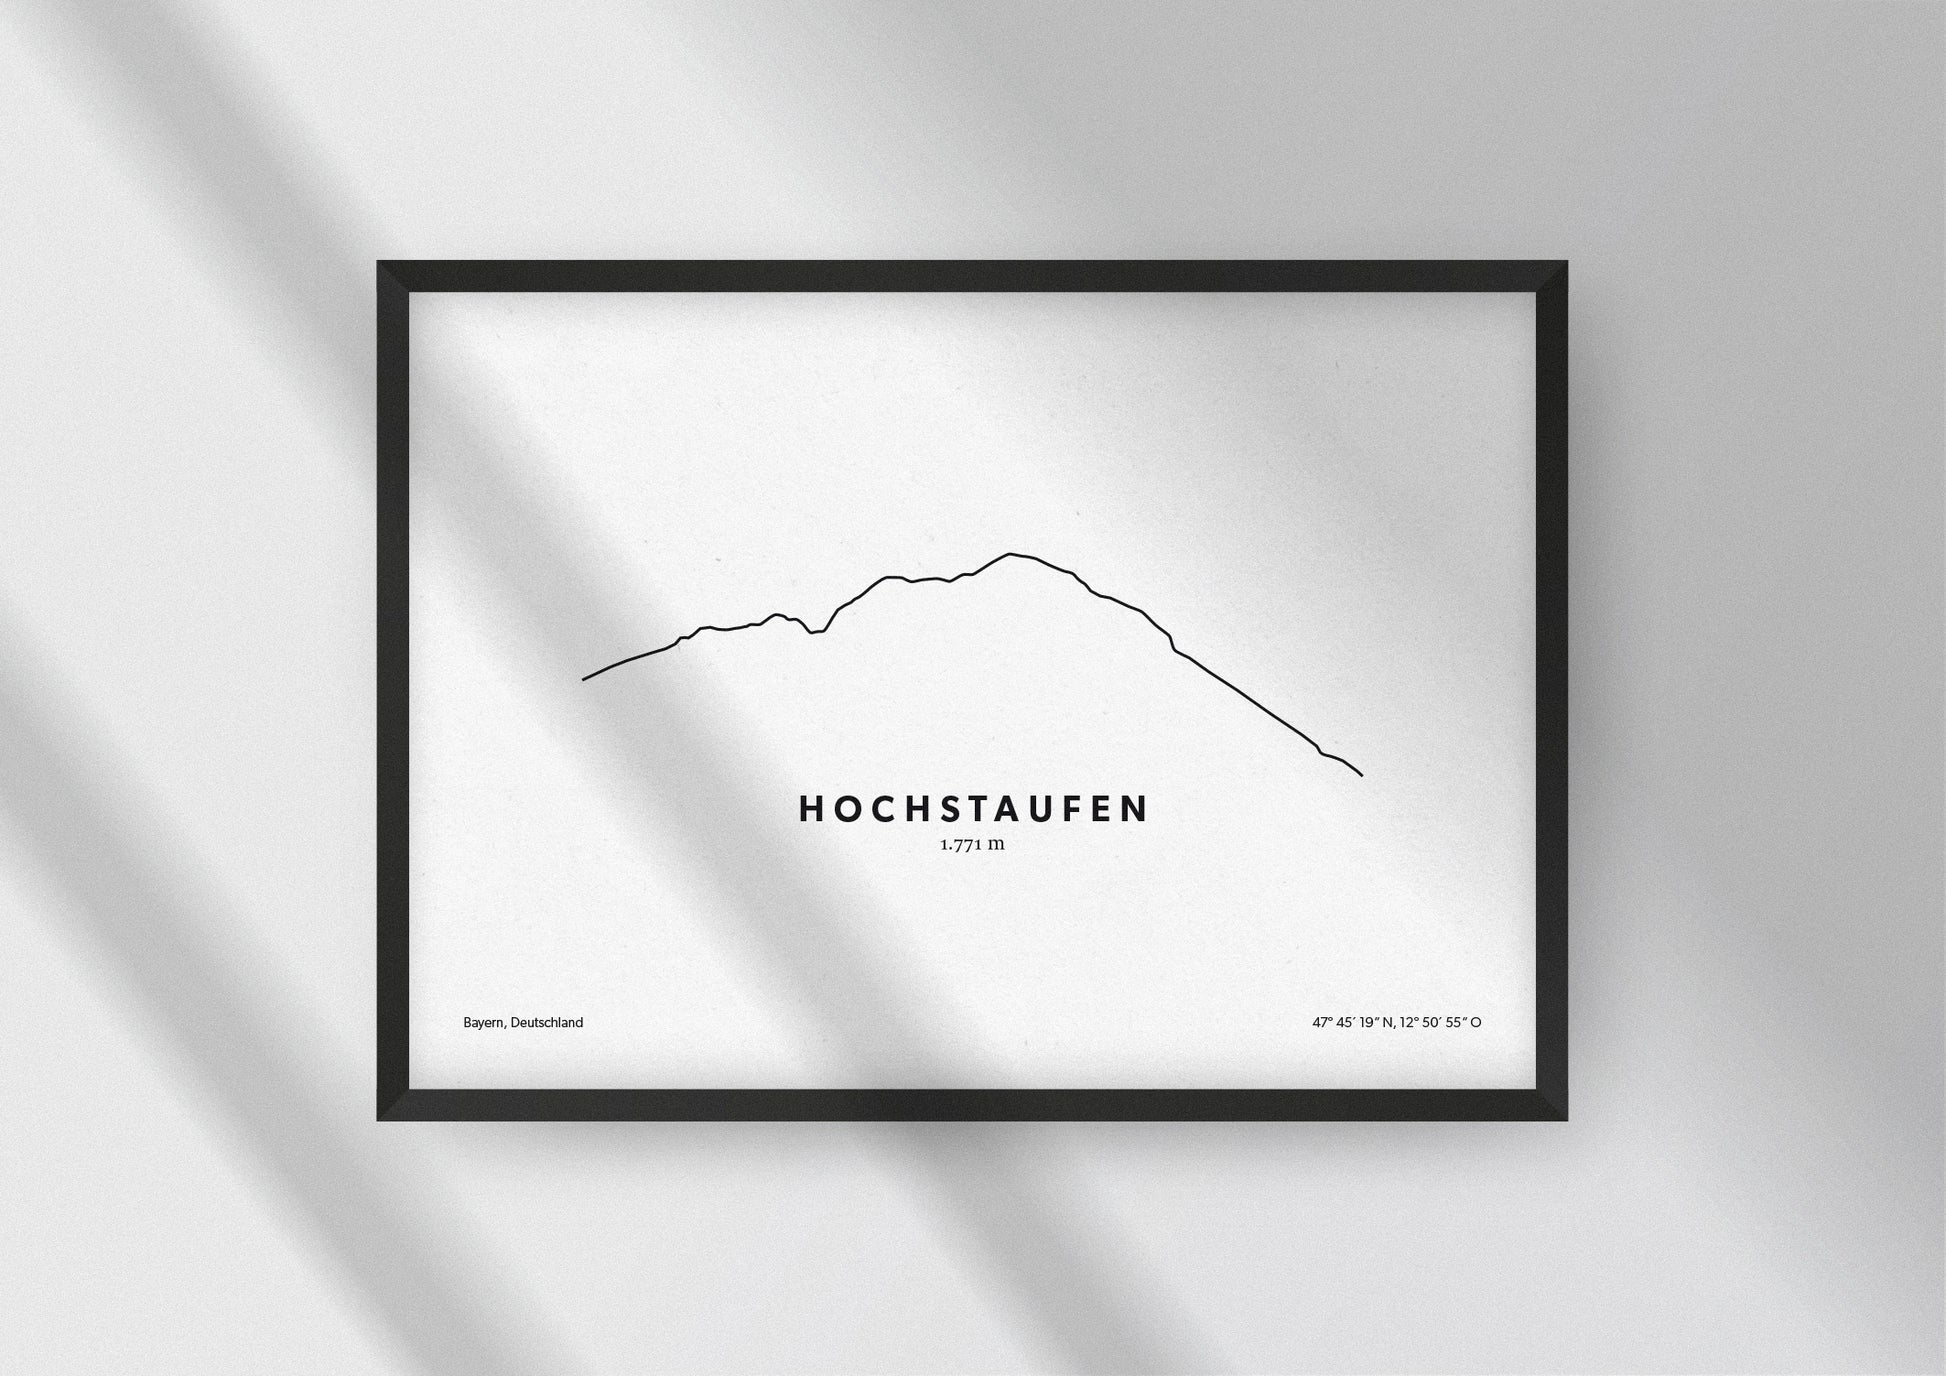 Minimalistische Illustration des Hochstaufen in den Chiemgauer Alpen, als stilvoller Einrichtungsgegenstand für Zuhause.